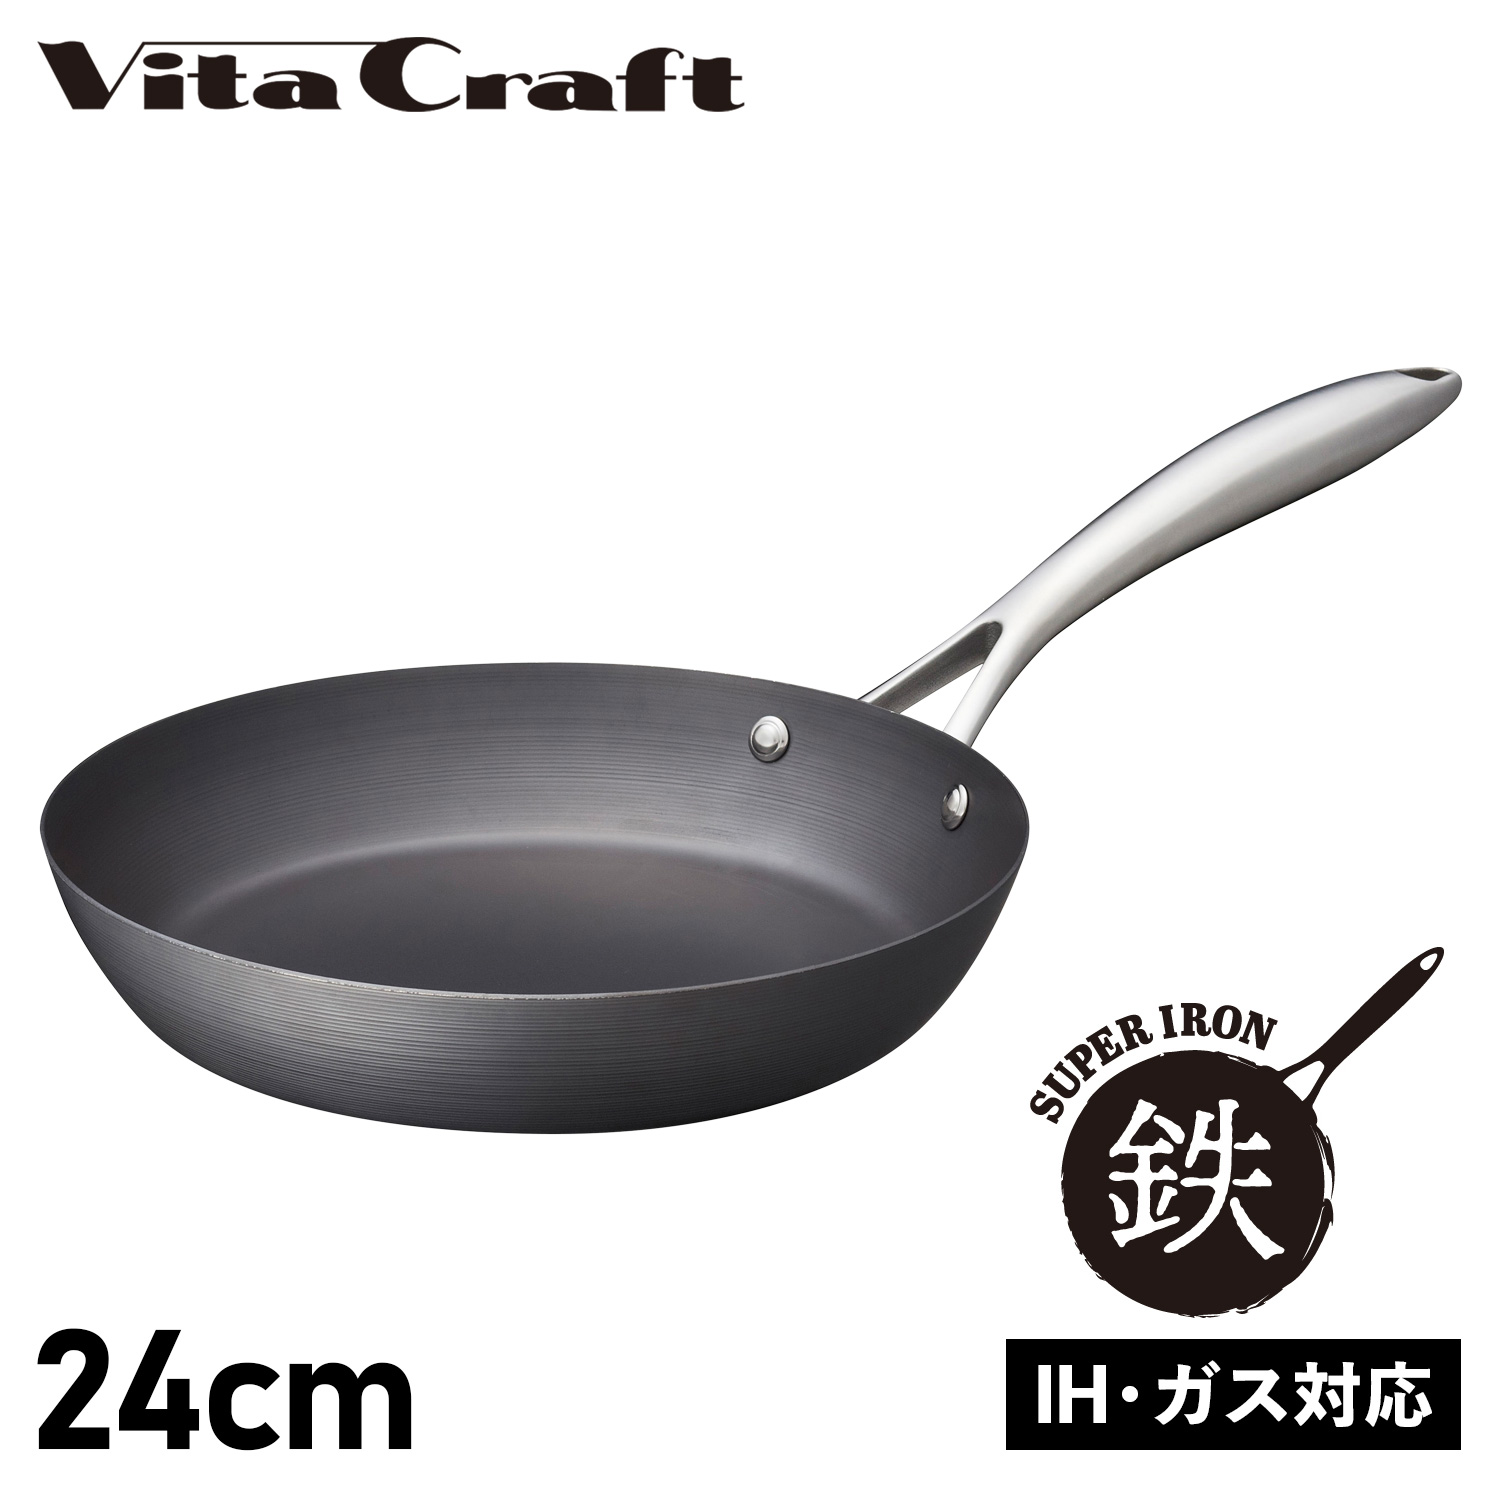 Vita Craft ビタクラフト スーパー鉄 フライパン 24cm IH ガス対応 FRY